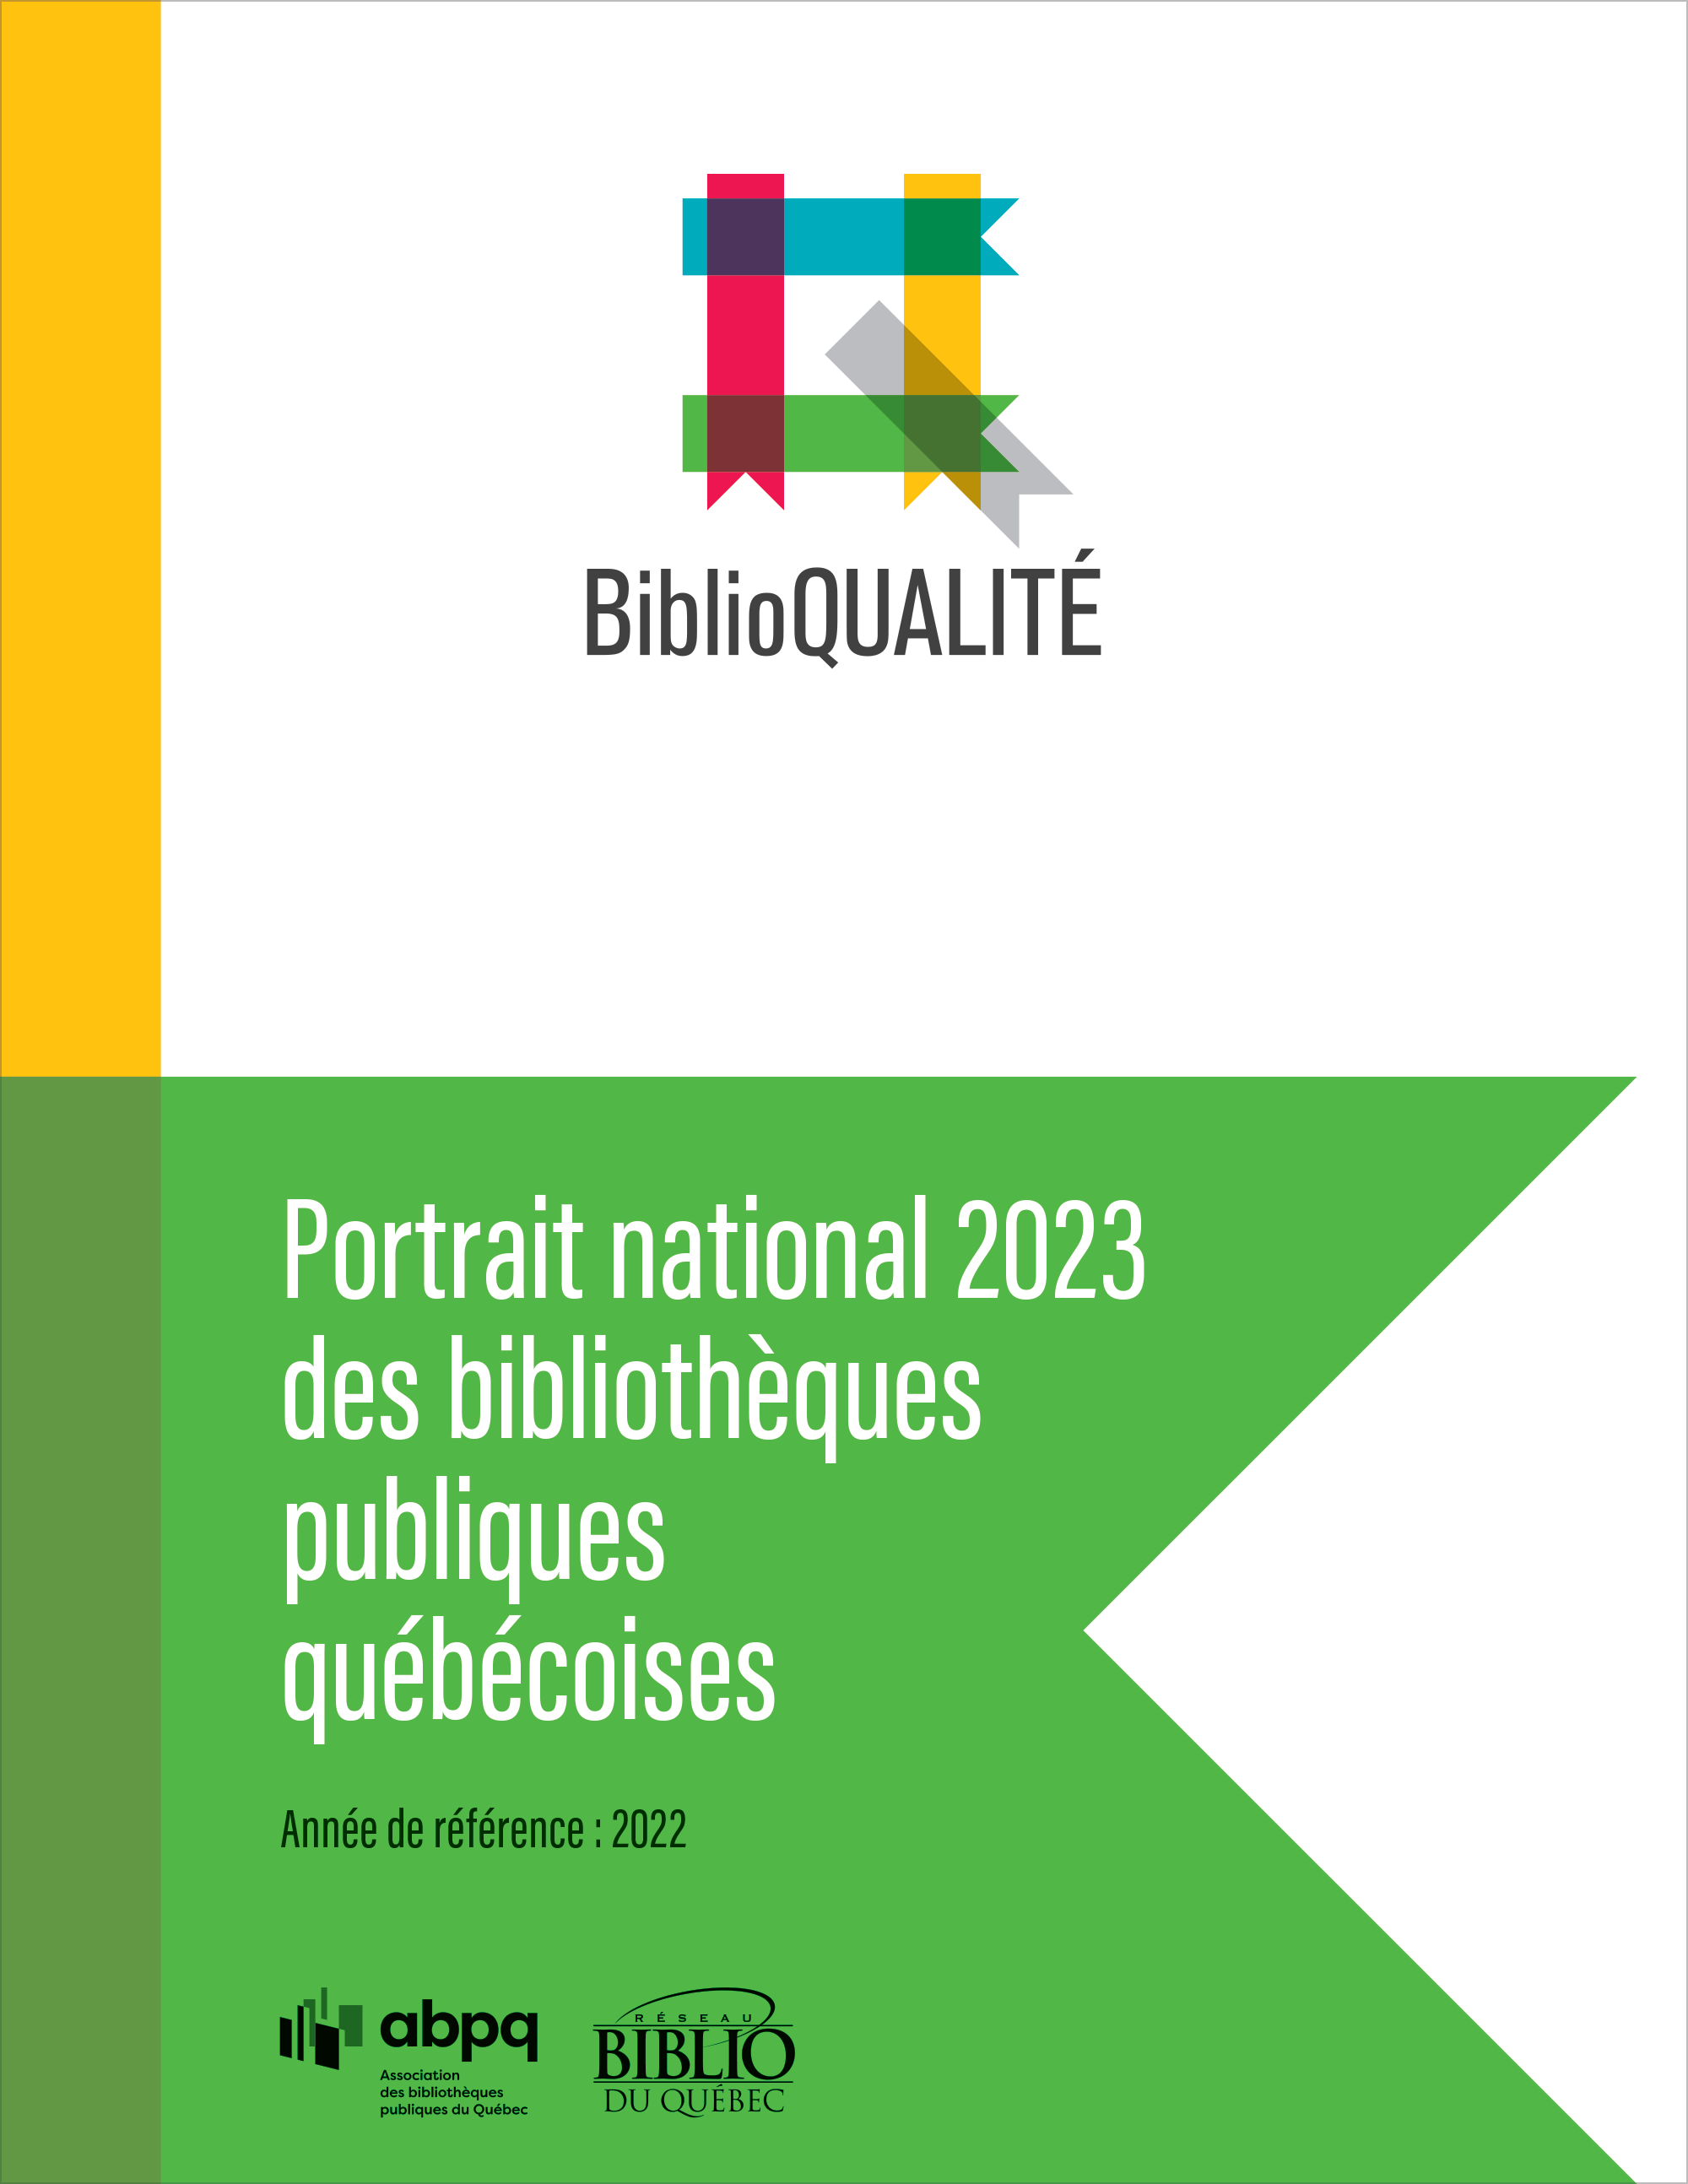 Portrait national 2022 des bibliothèques publiques québécoises